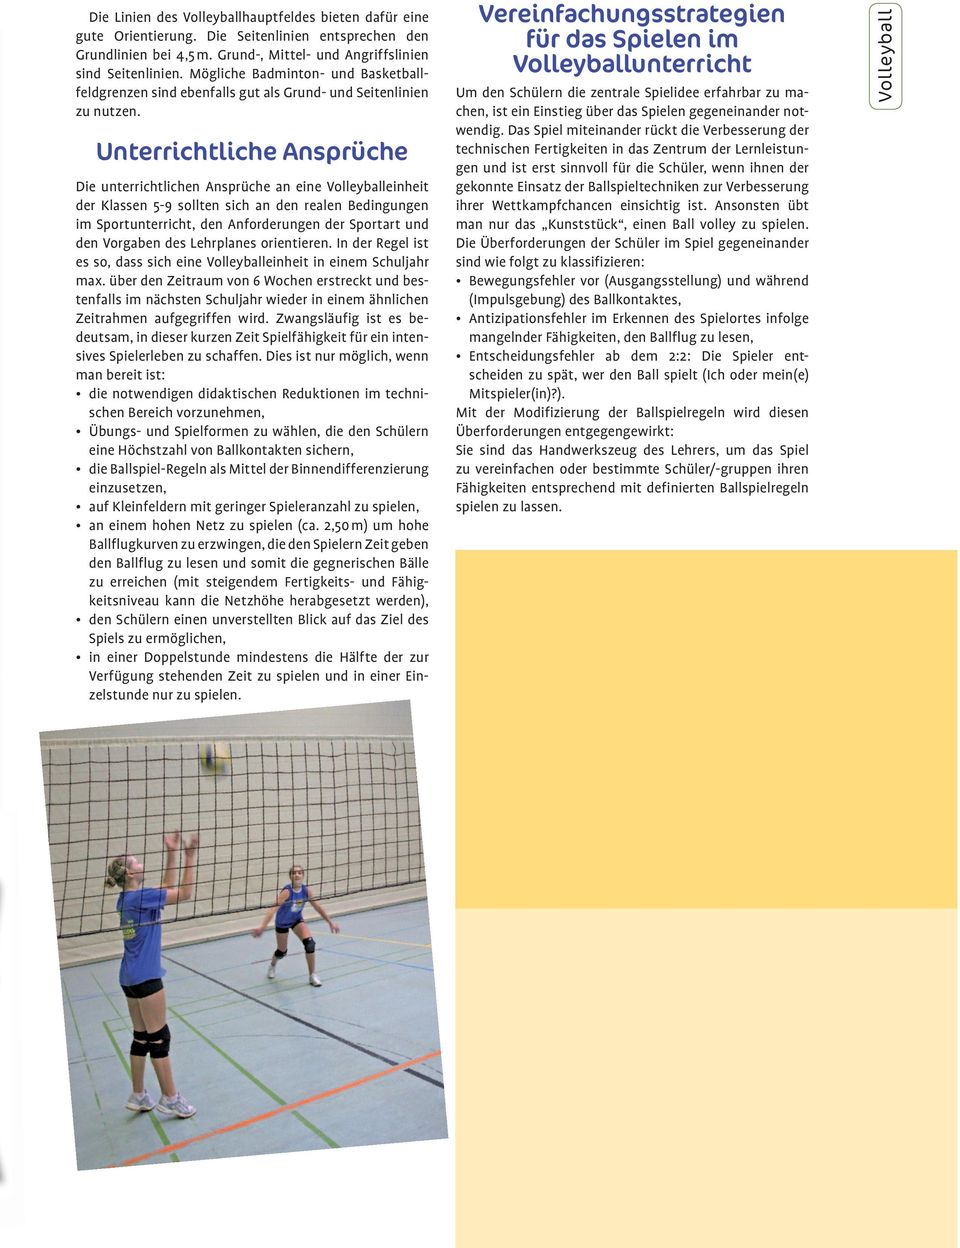 Unterrichtliche Ansprüche Die unterrichtlichen Ansprüche an eine Volleyballeinheit der Klassen 5-9 sollten sich an den realen Bedingungen im Sportunterricht, den Anforderungen der Sportart und den